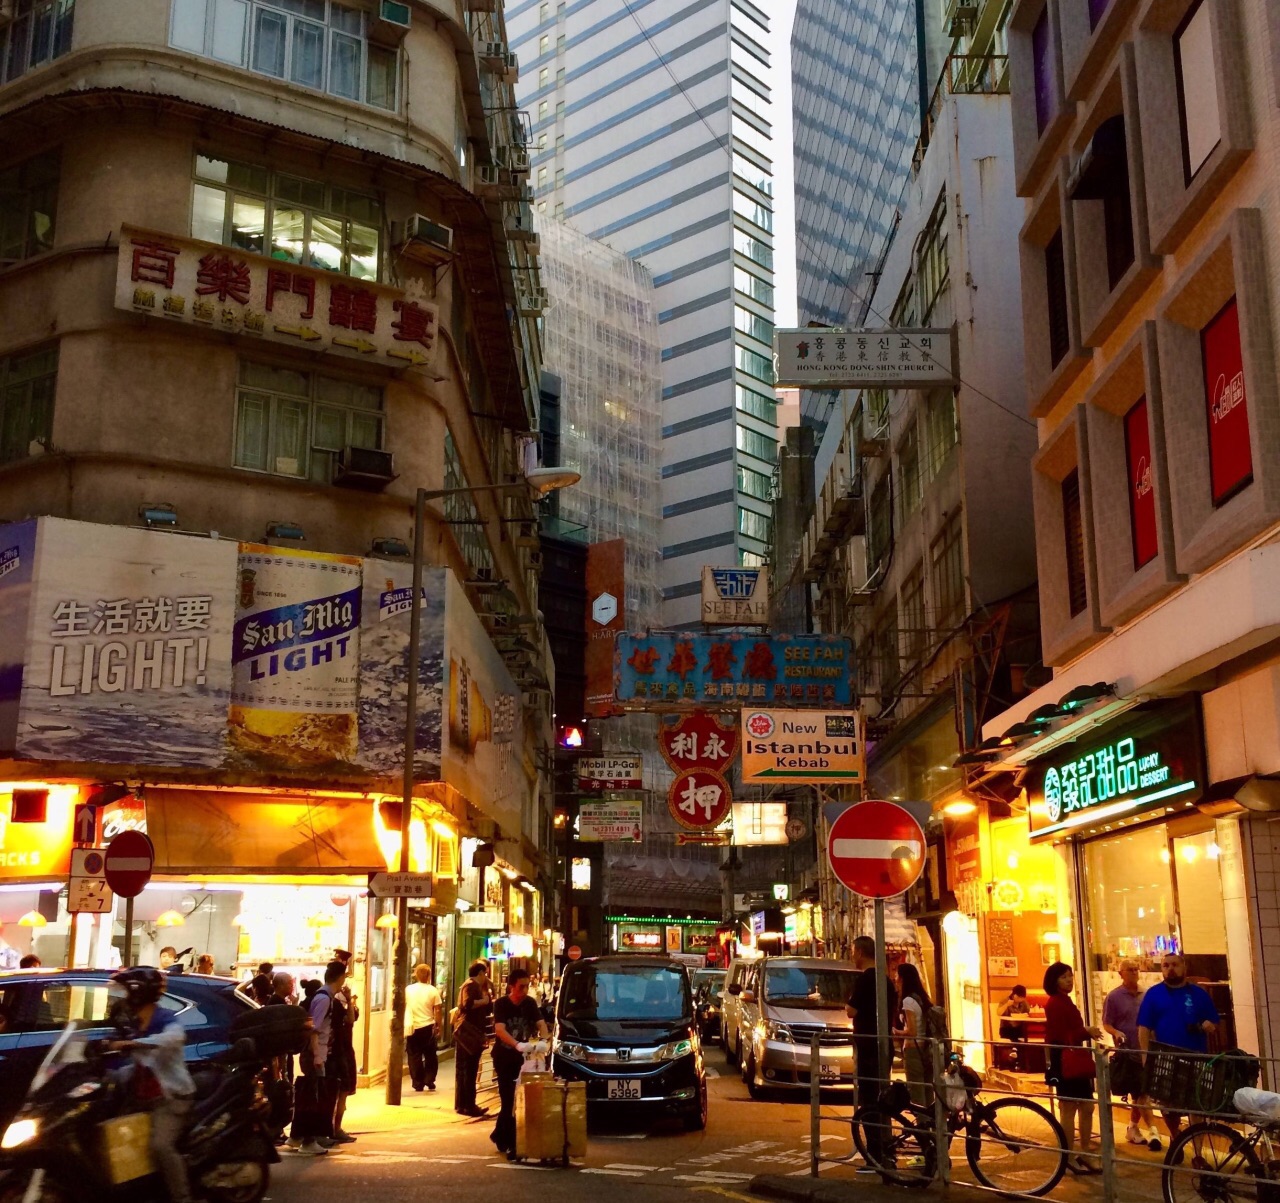 香港商业建筑合集 - 知乎